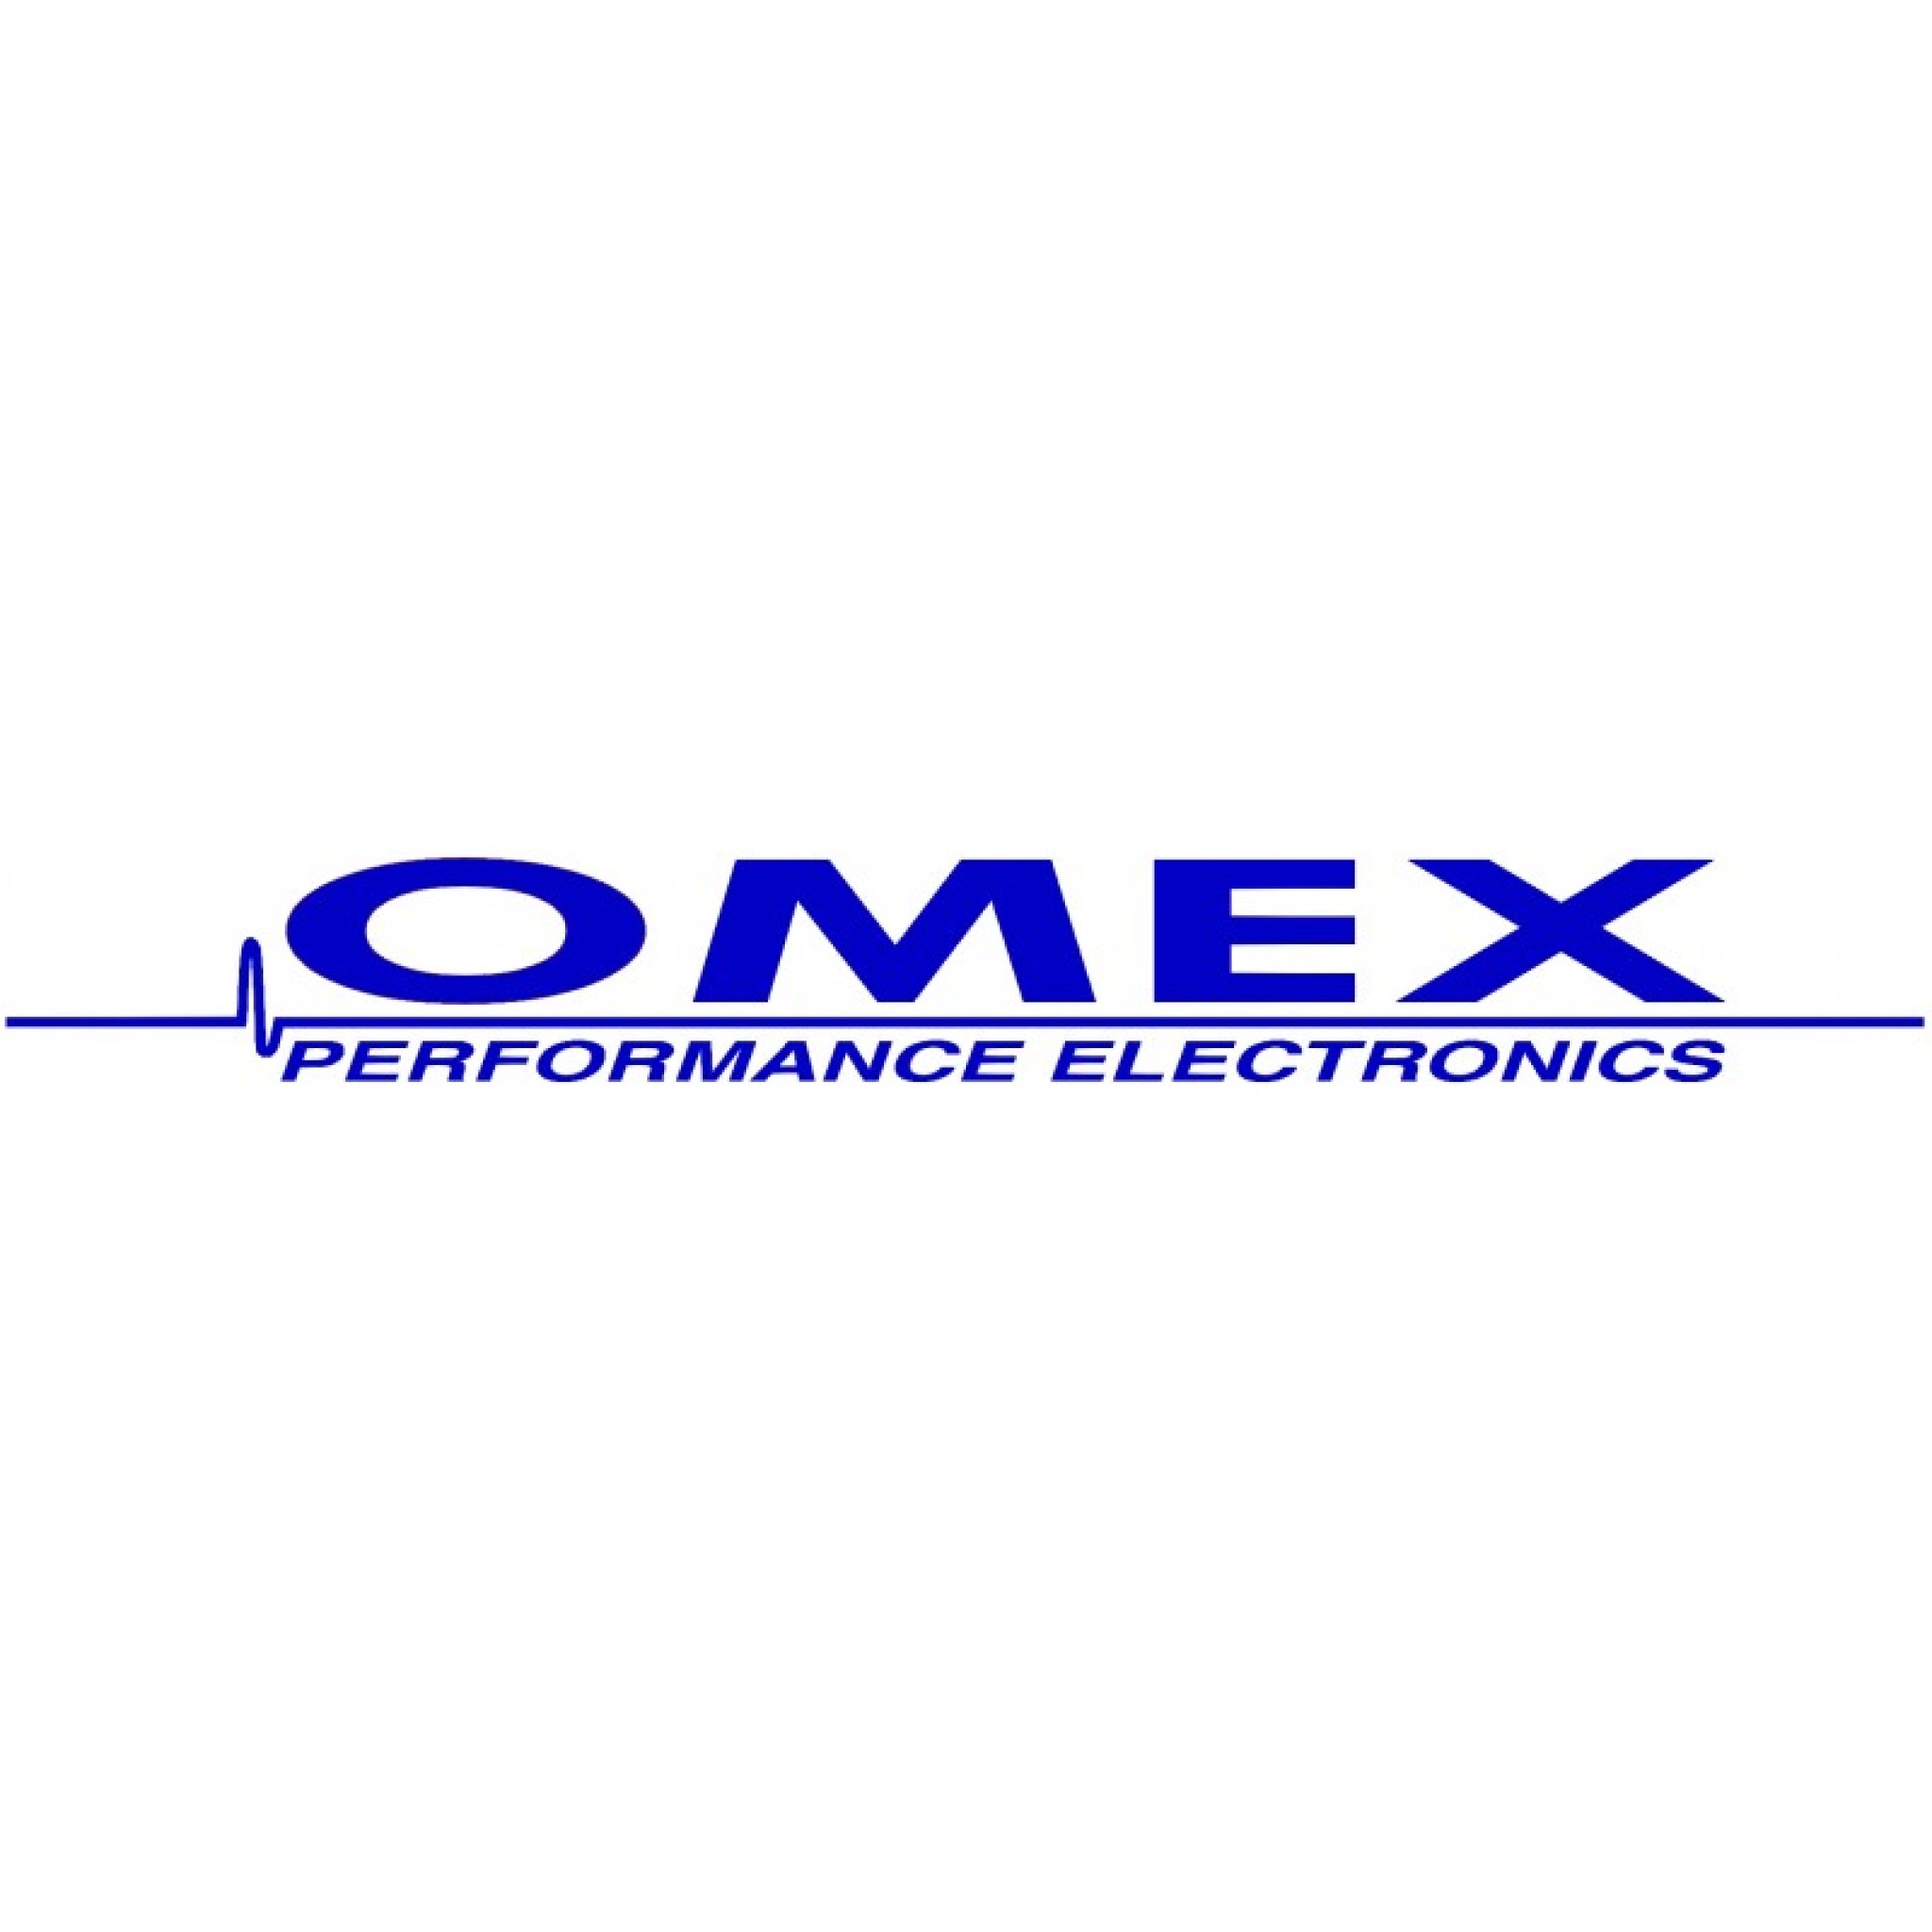 5649ee30a852d_Omex-Logo-1-800x800.jpg